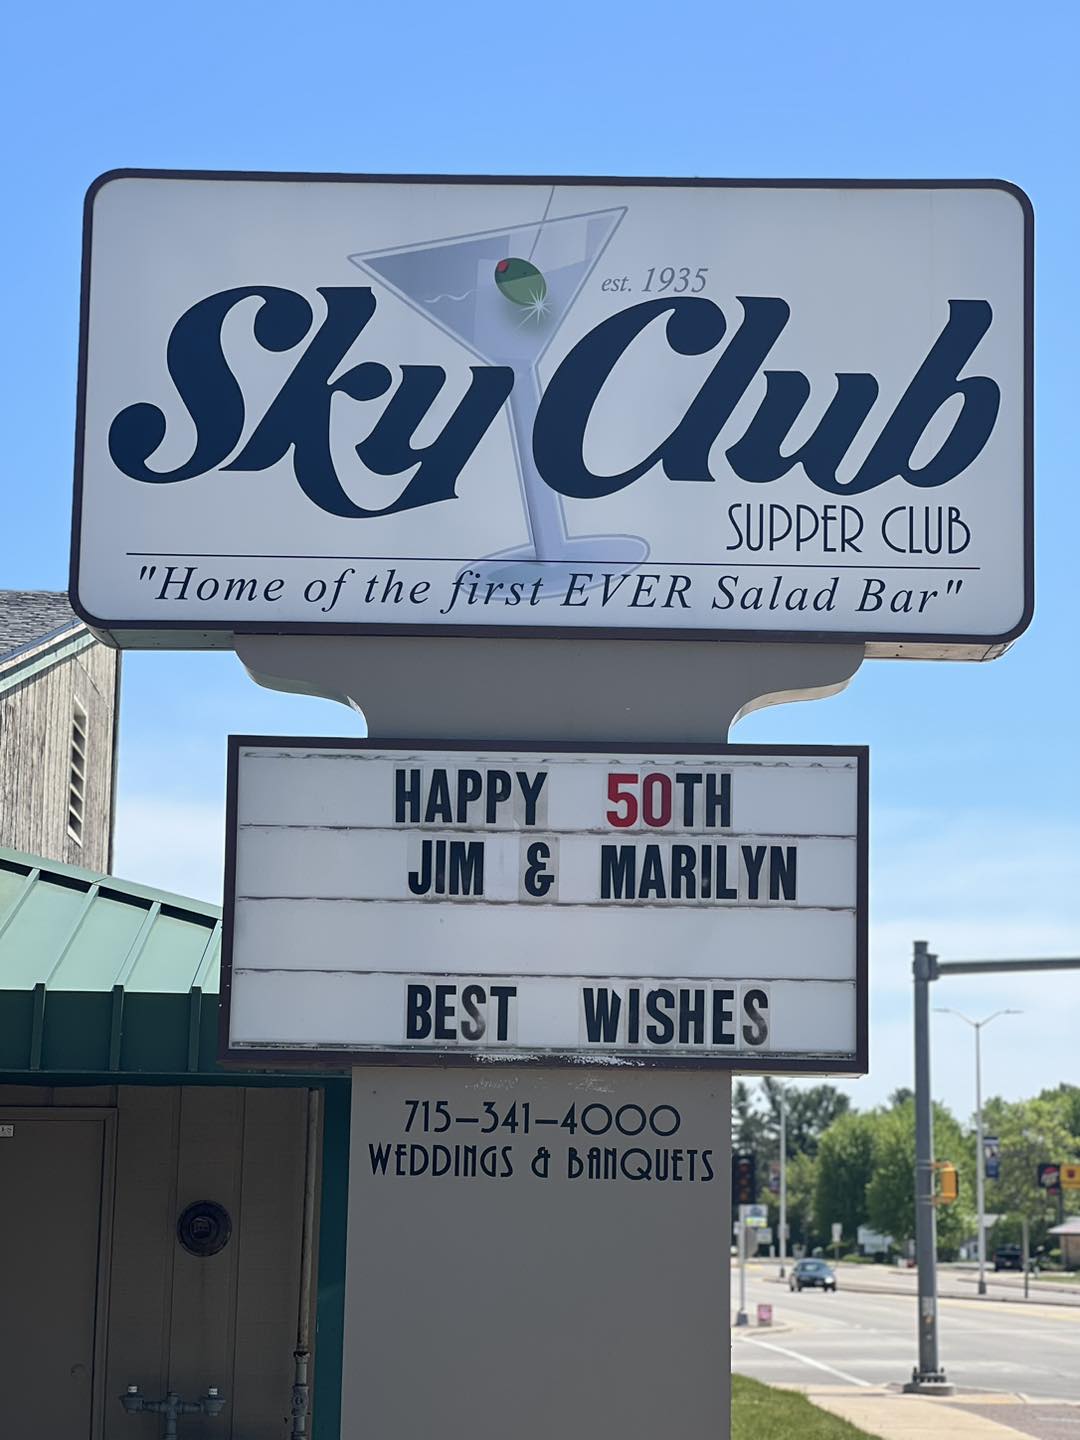 Sky Club Supper Club